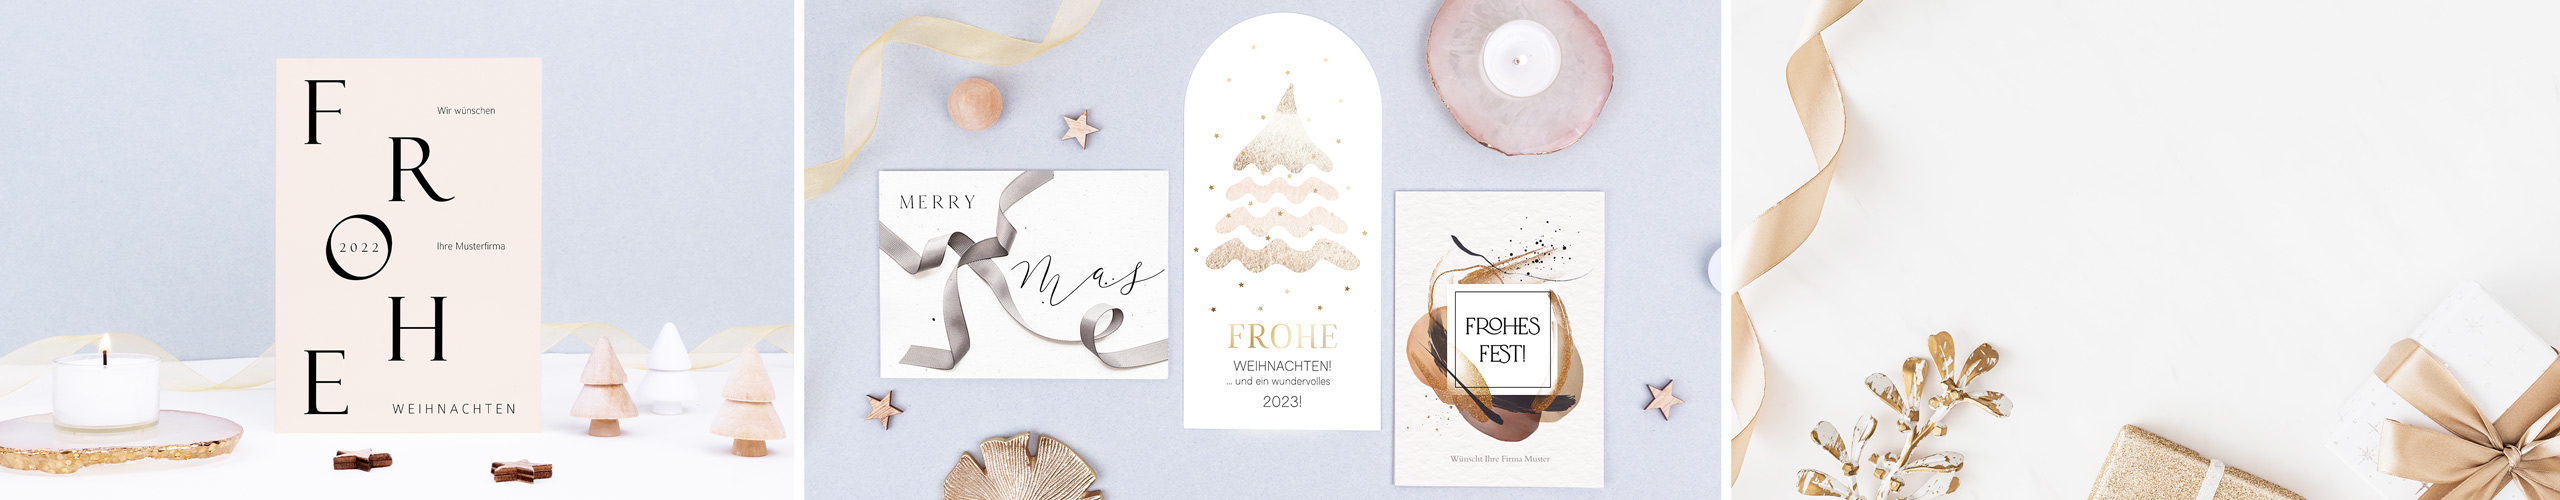 Geschäftliche Weihnachtskarten in verschiedenen Formaten und Designs